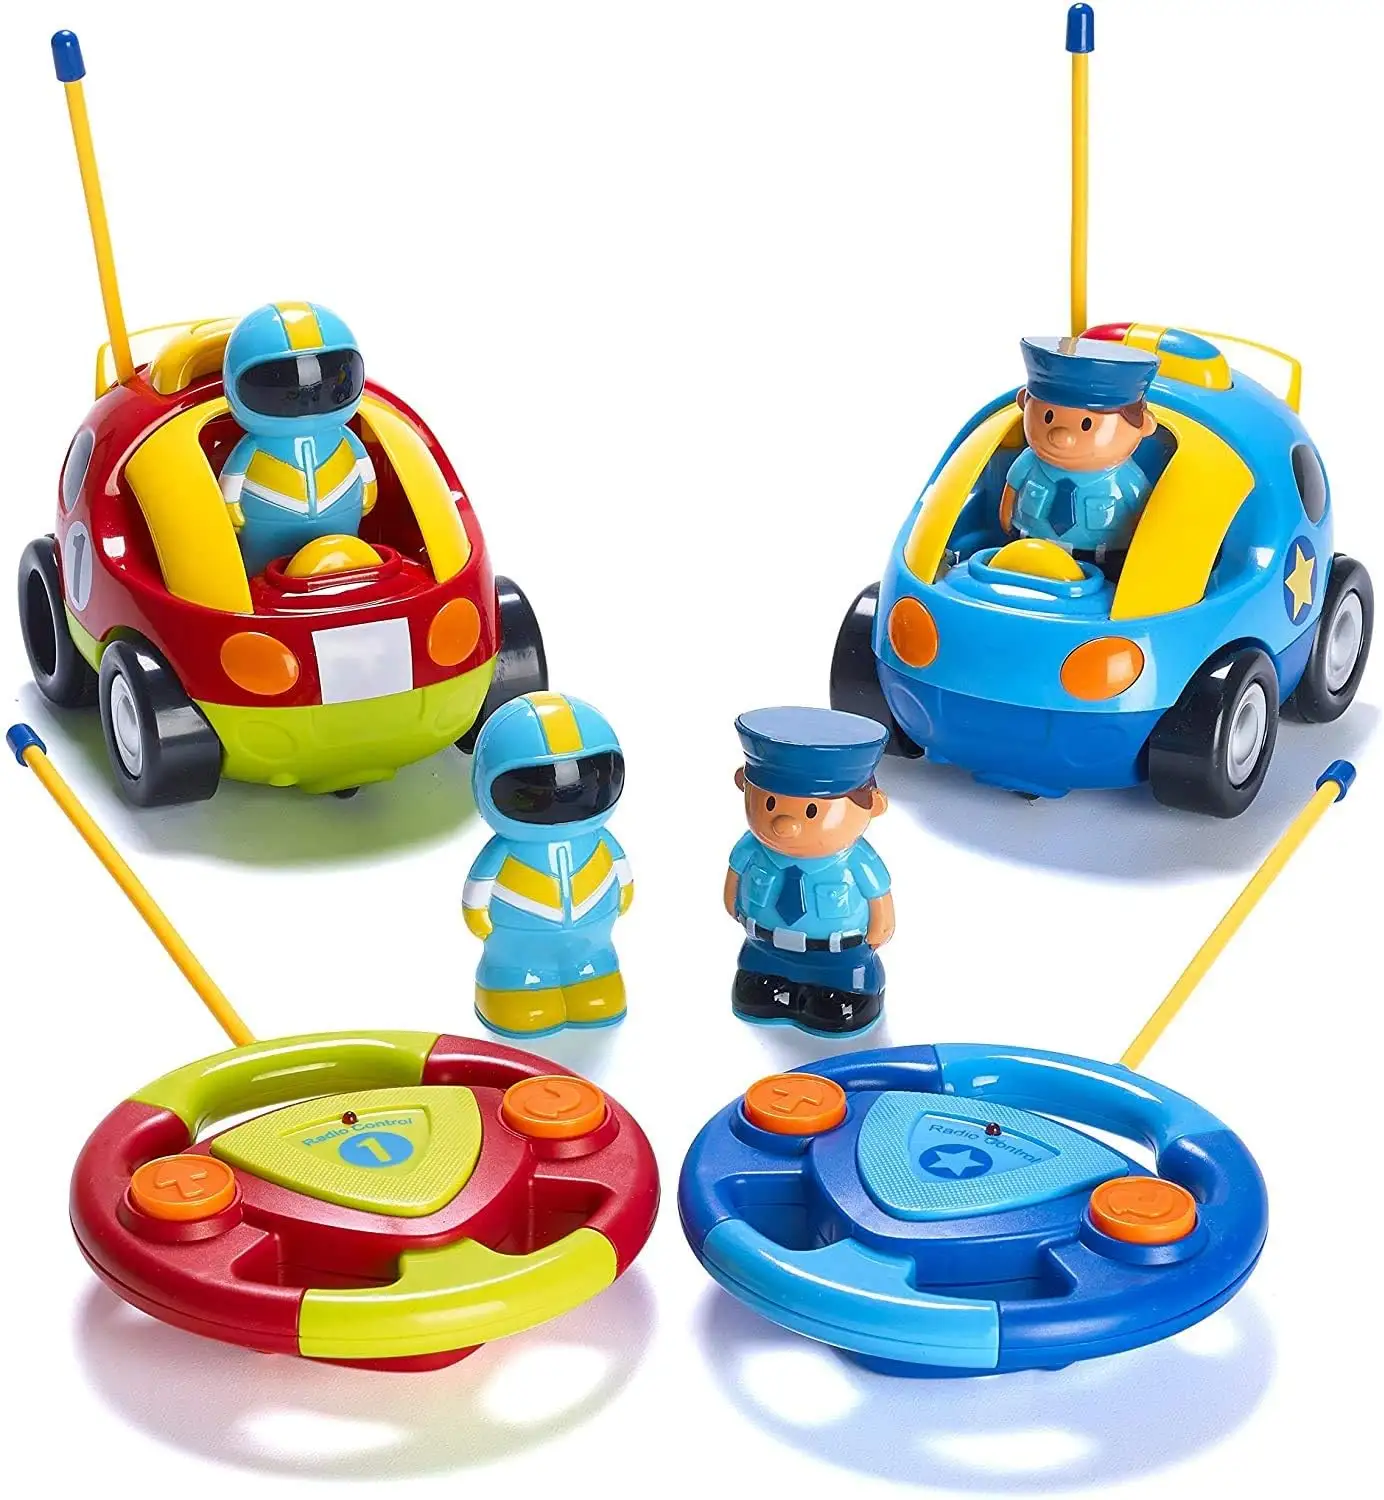 Dwi Dowellin mobil Remote Control anak, 2 pak kartun mobil polisi dan mobil balap-mainan kendali Radio untuk anak-anak, anak laki-laki dan perempuan